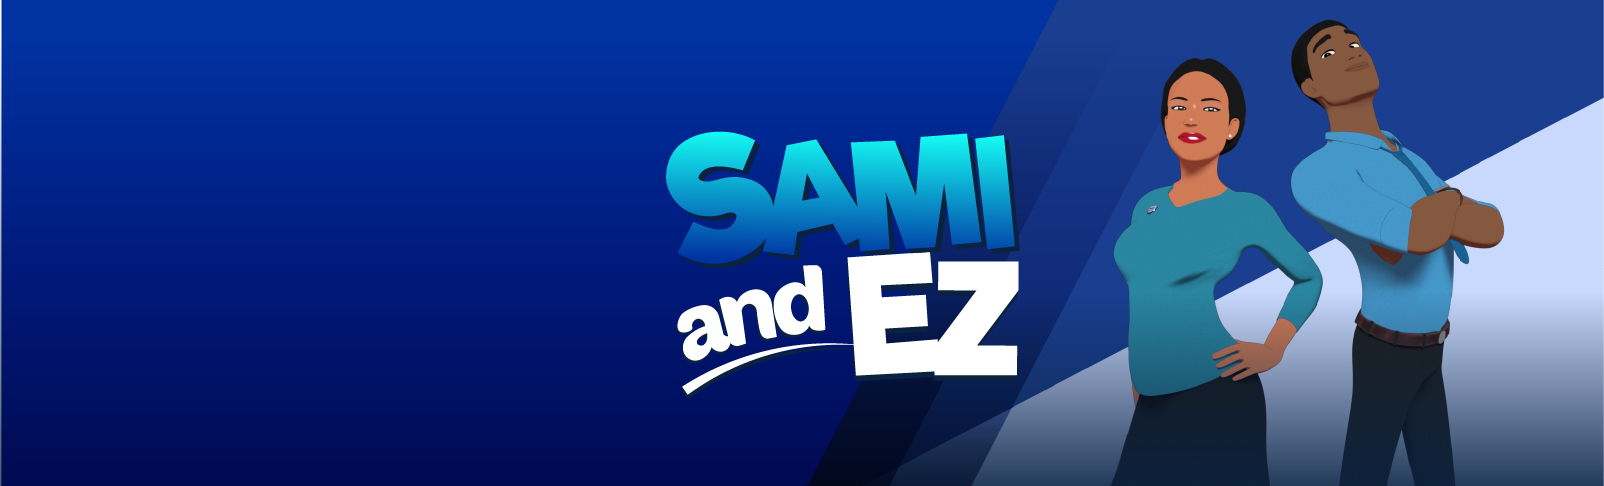 SAMI and EZ Banner Image V1